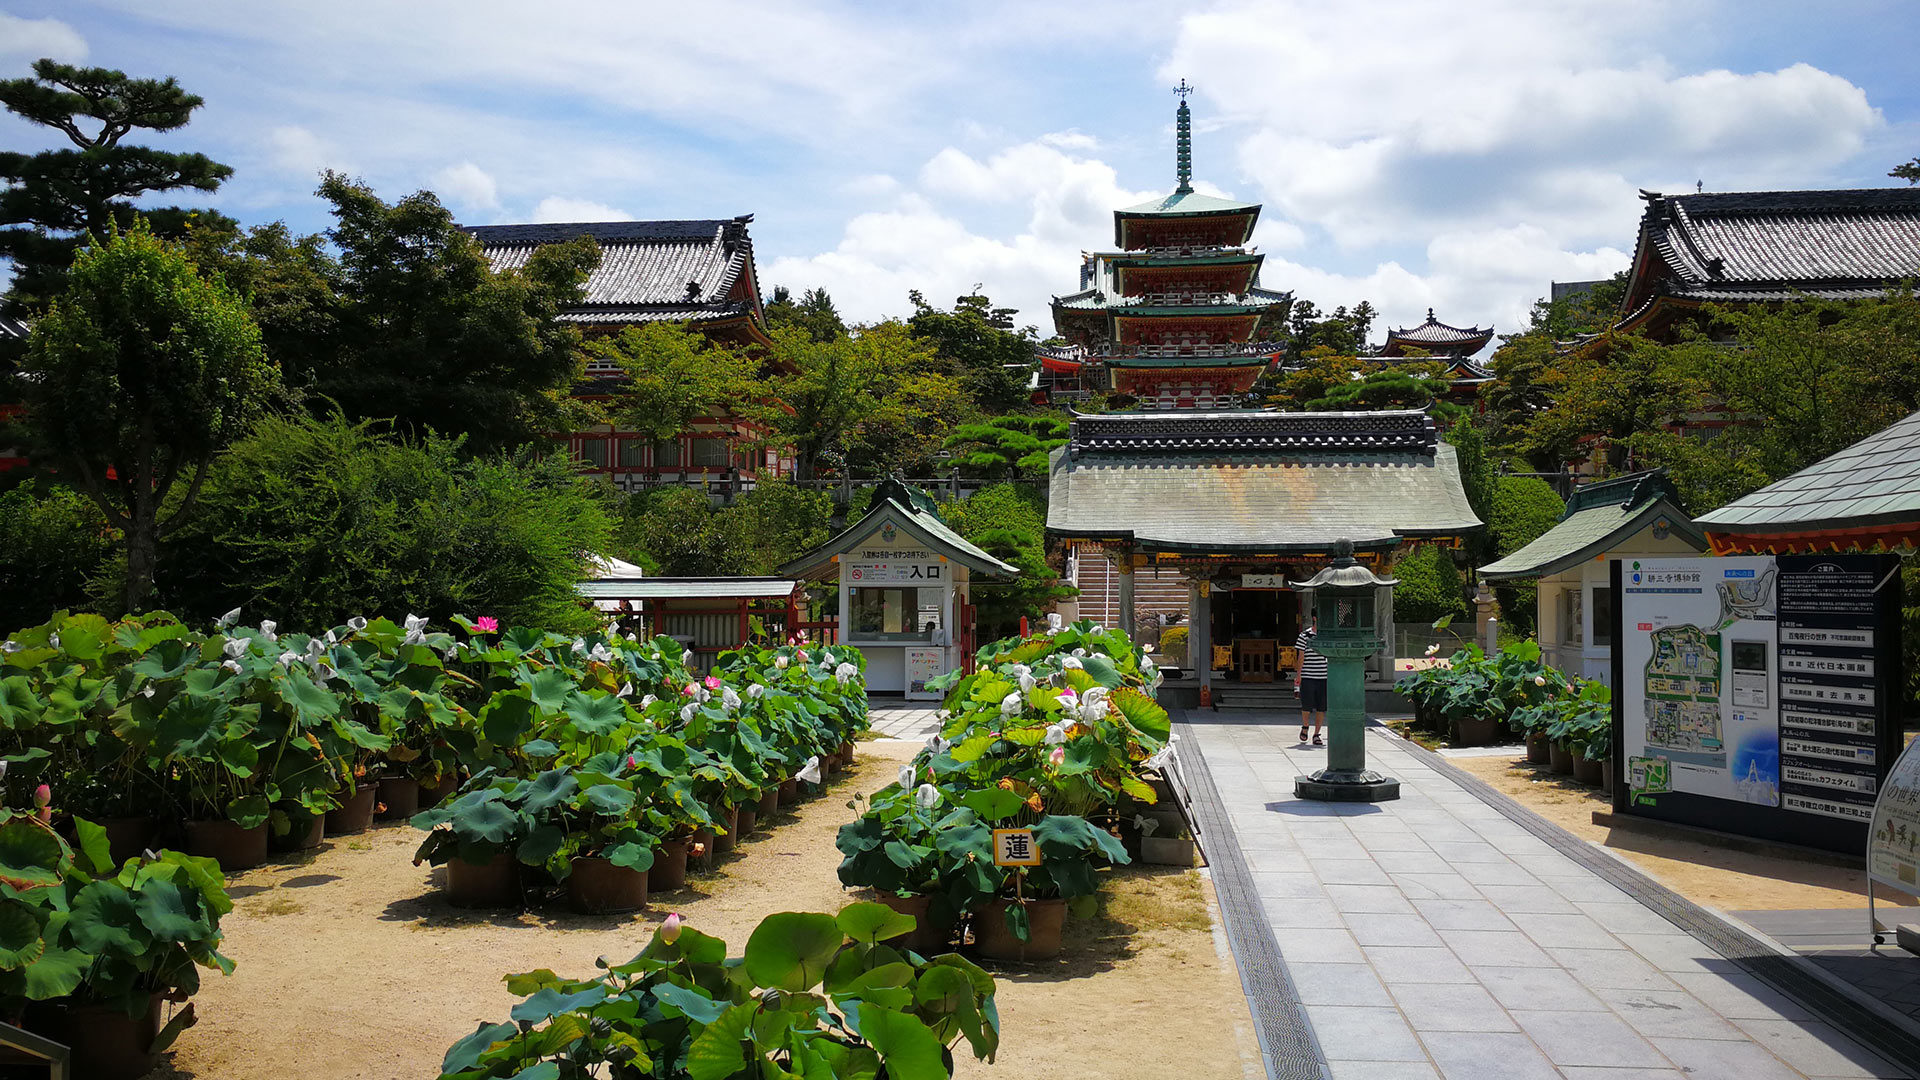 耕三寺博物館(こうさんじはくぶつかん) Kosanji Temple Museum